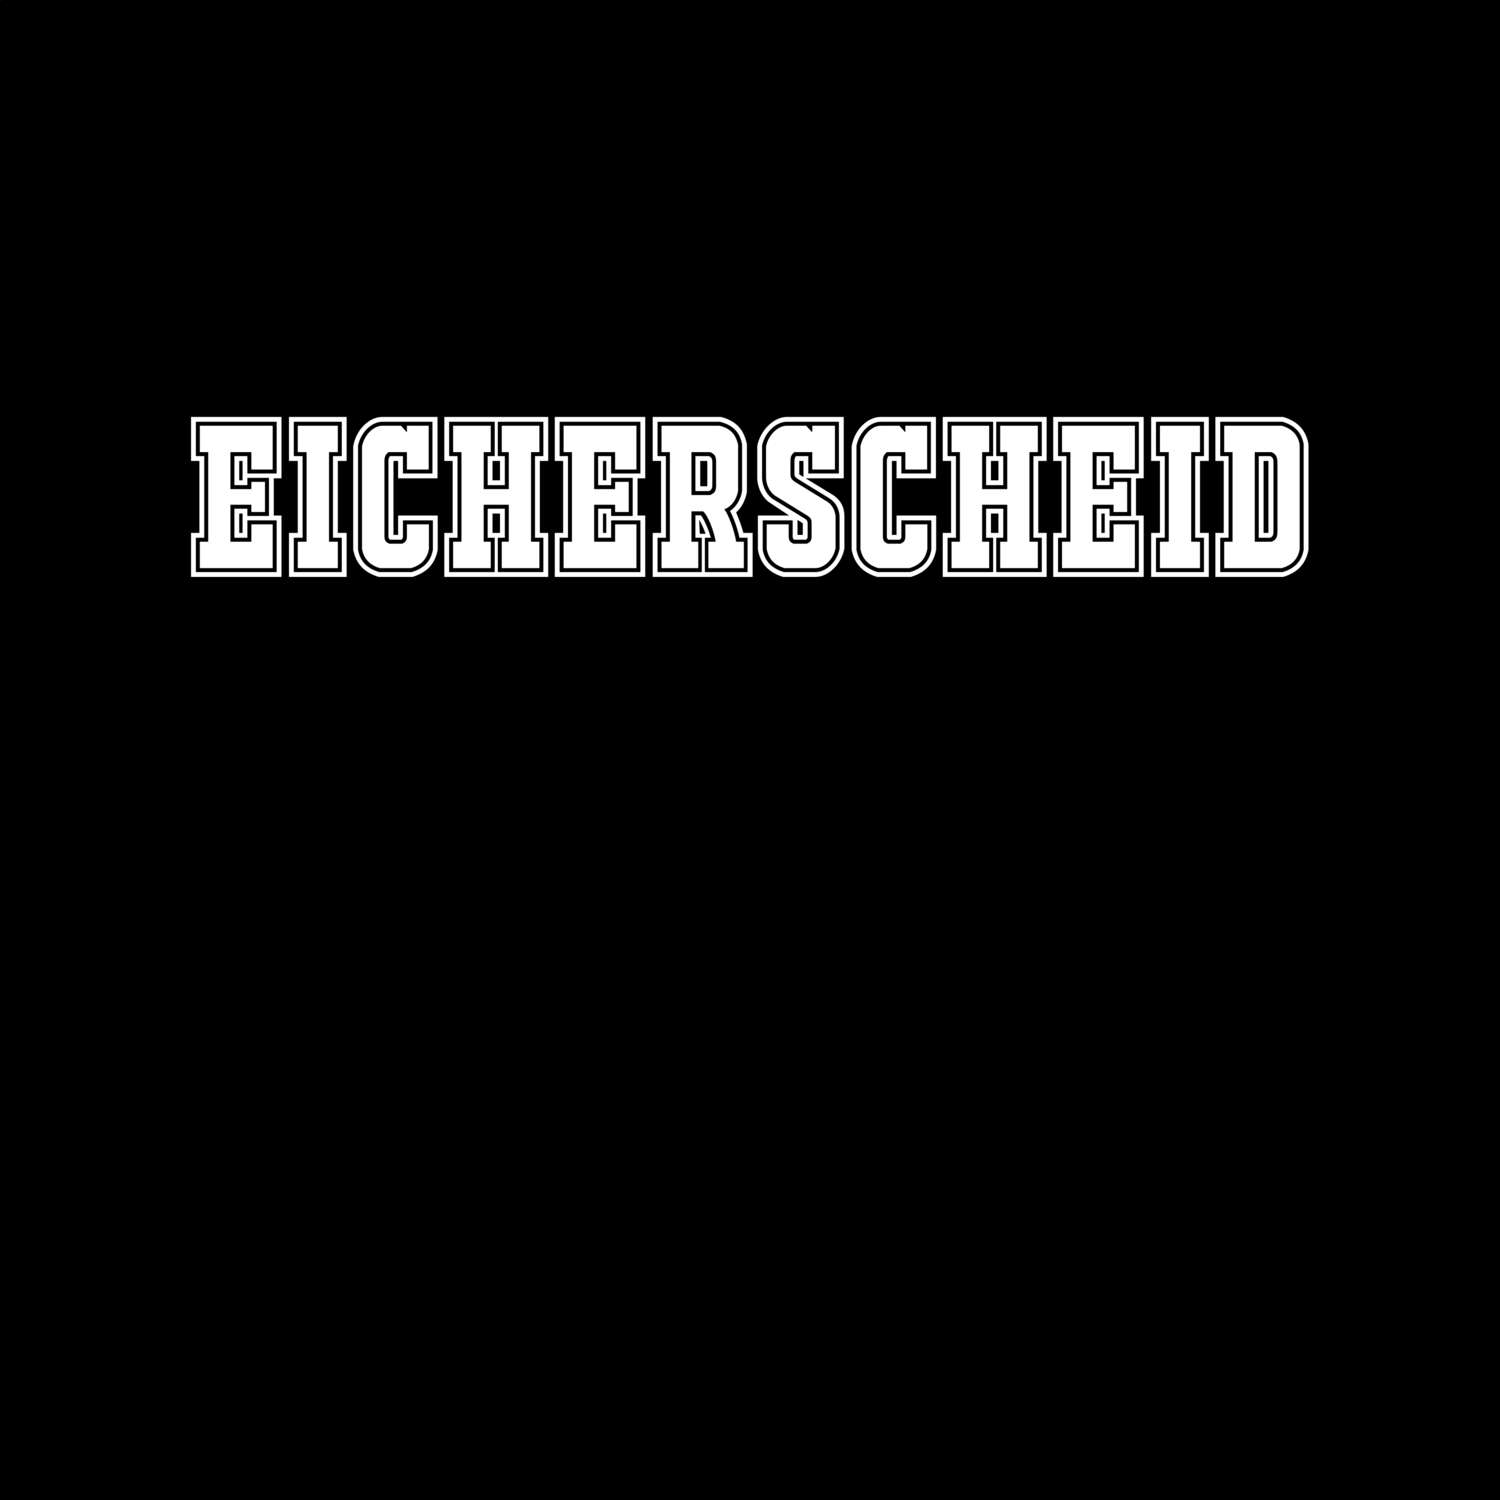 Eicherscheid T-Shirt »Classic«